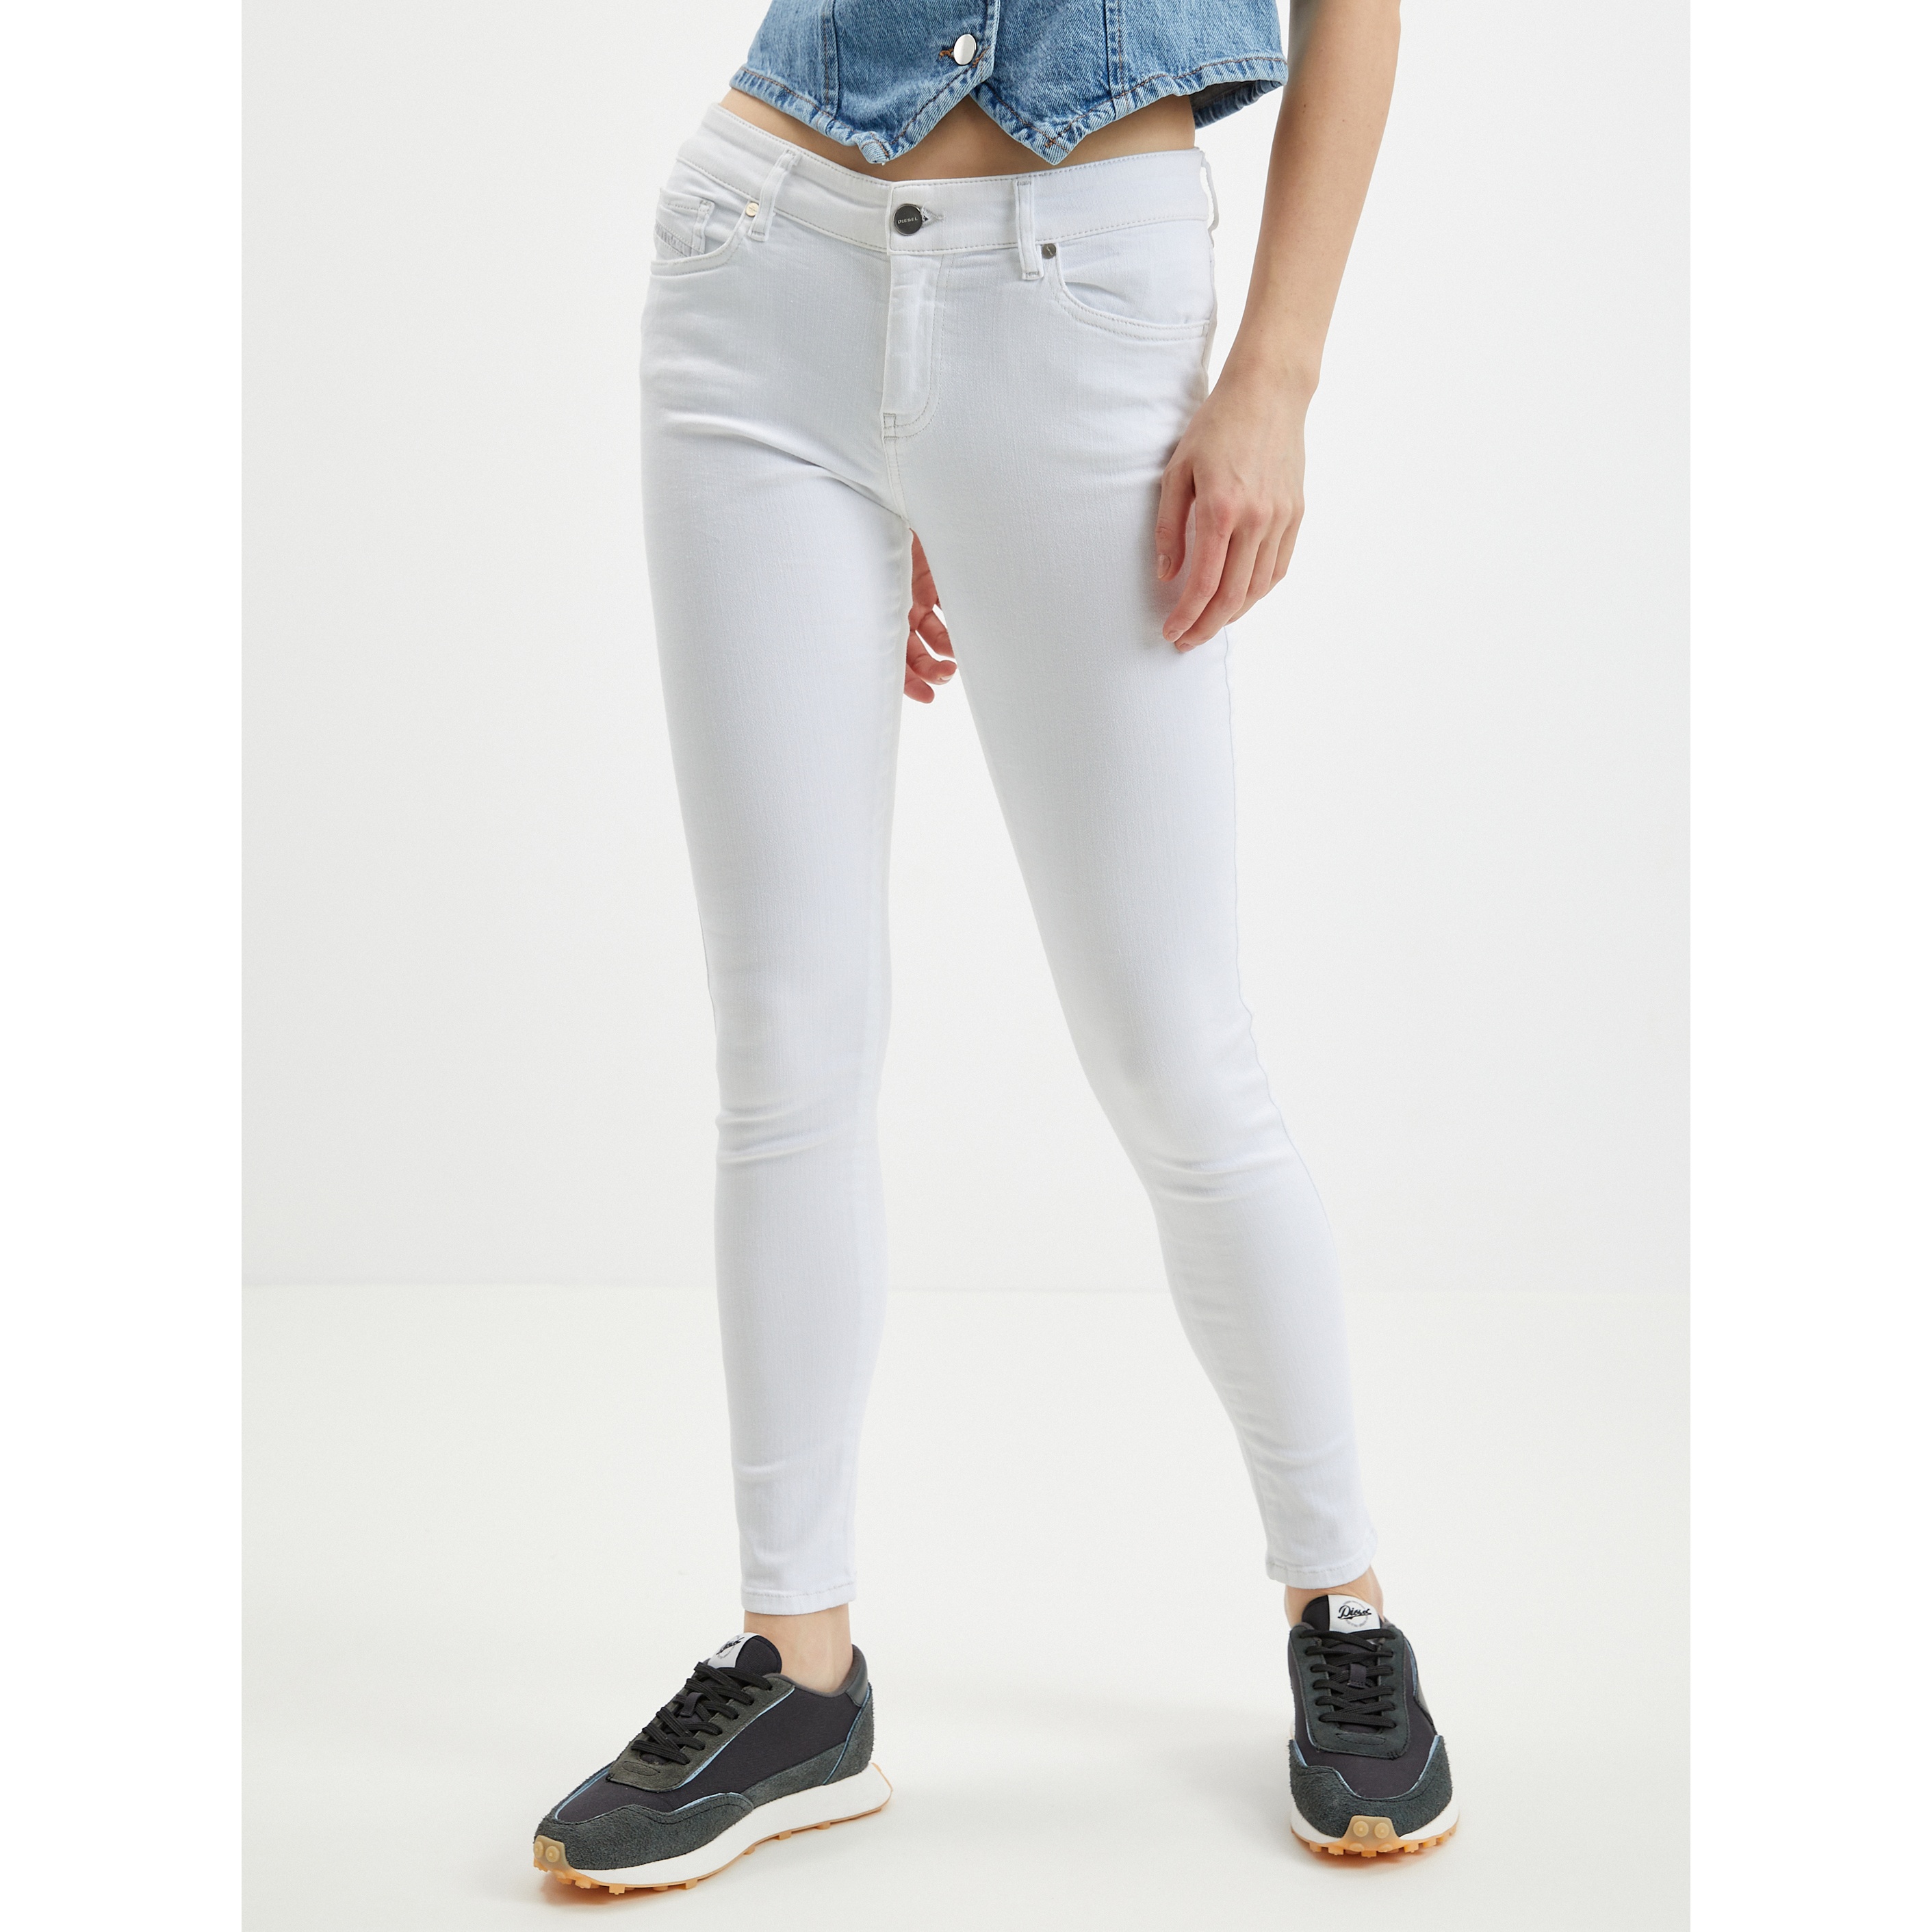 White Women's Cropped Skinny Fit Diesel Jeans - Women's